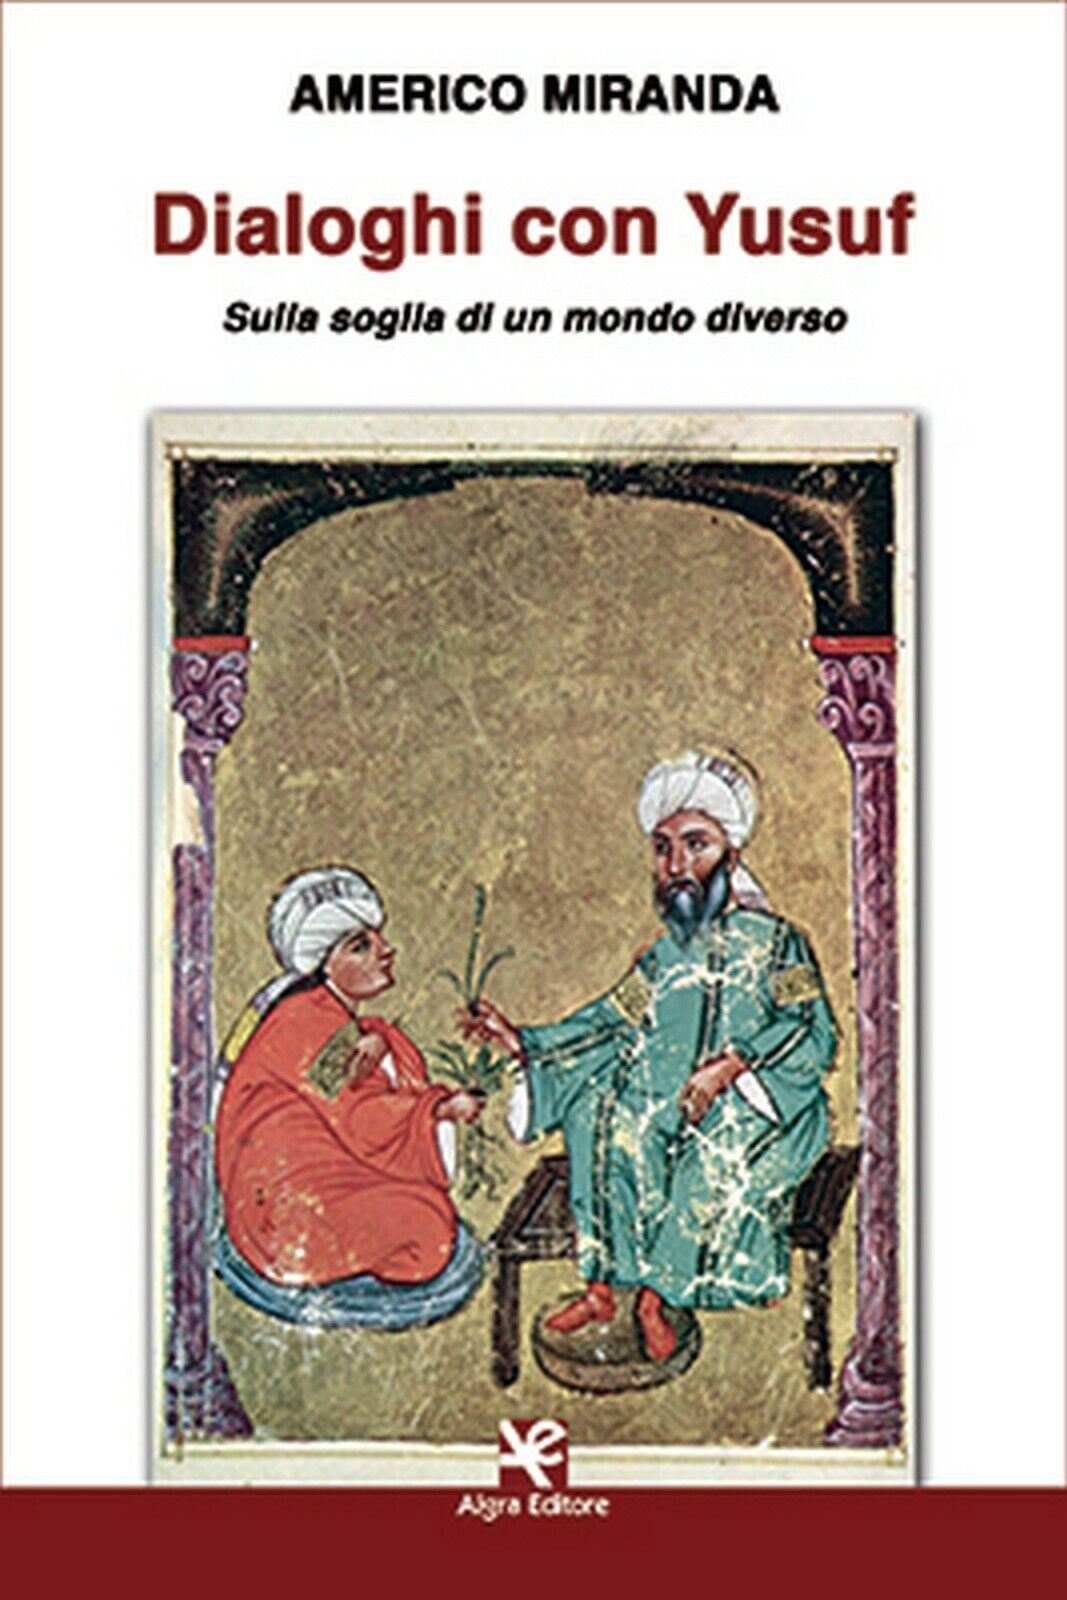 Dialoghi con Yusuf  di Americo Miranda,  Algra Editore